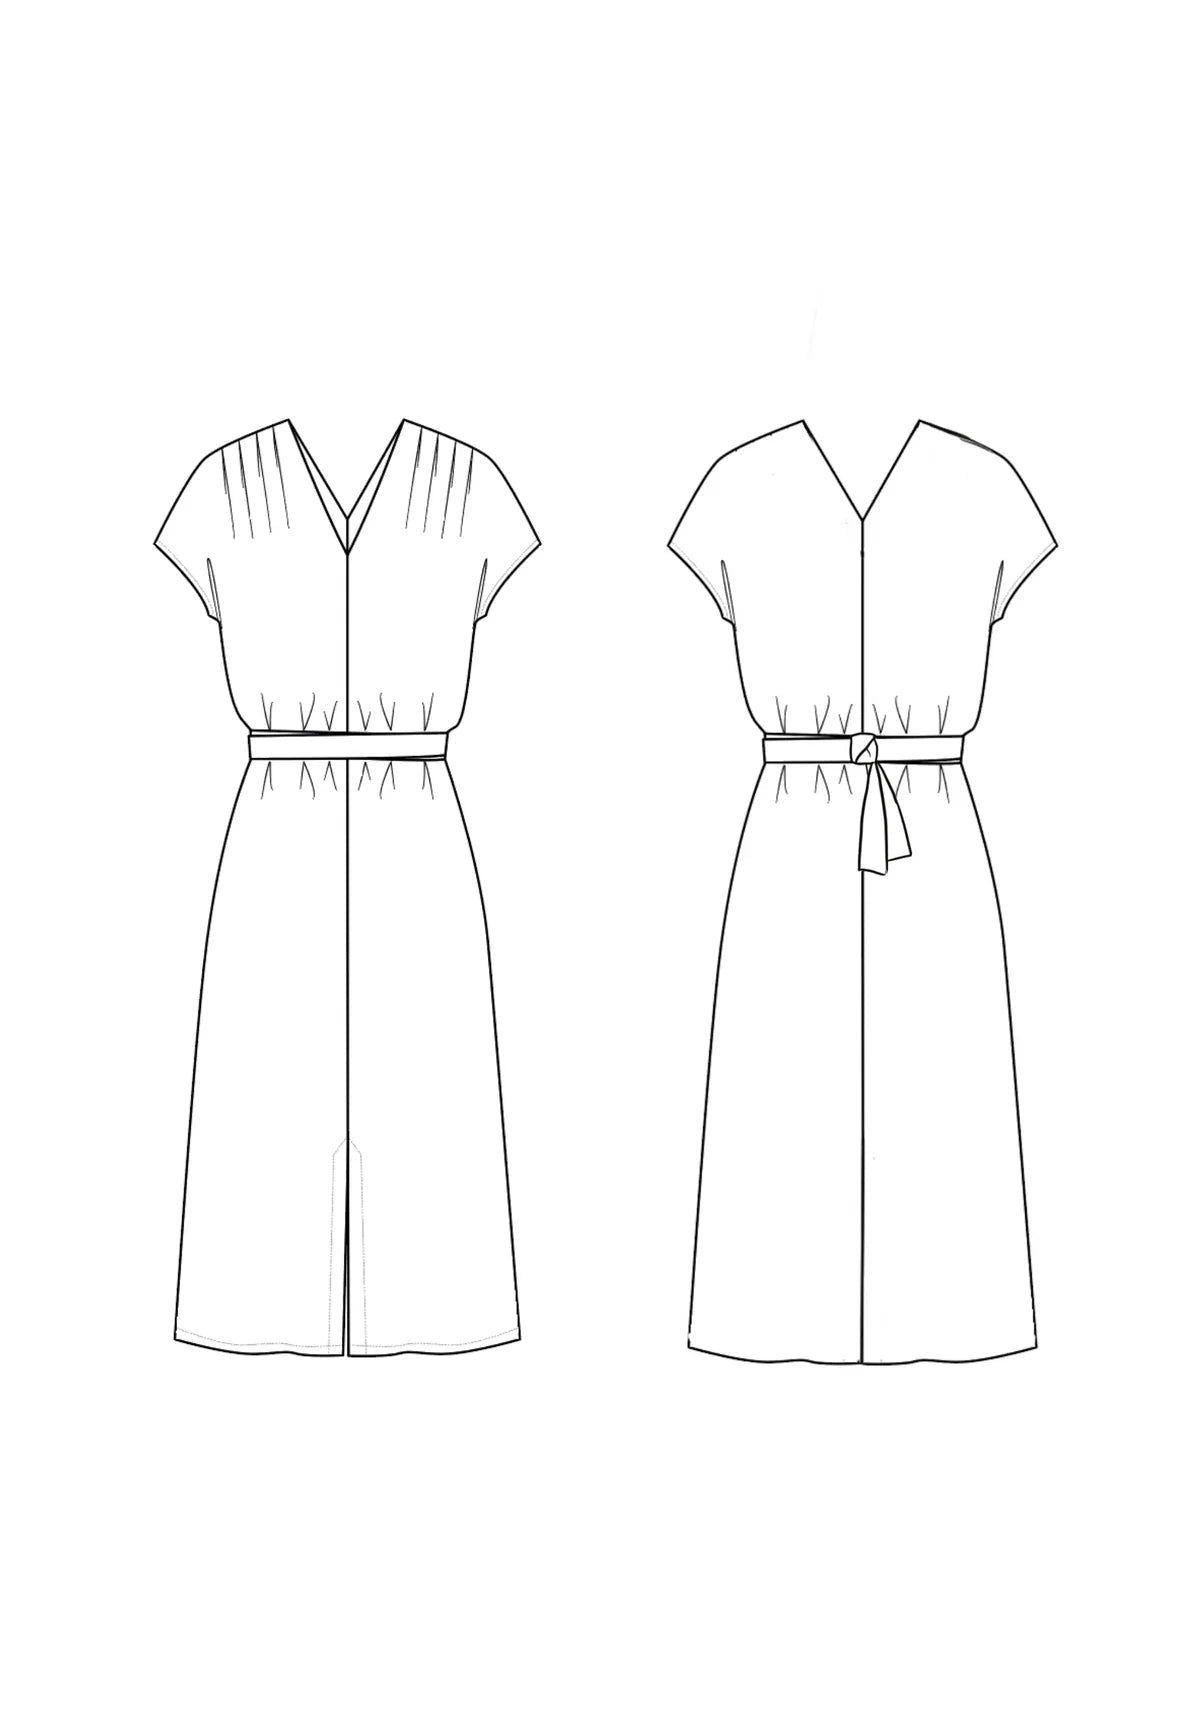 Sewing Kit - The Transat Dress in Utopia TENCEL™ Sateen